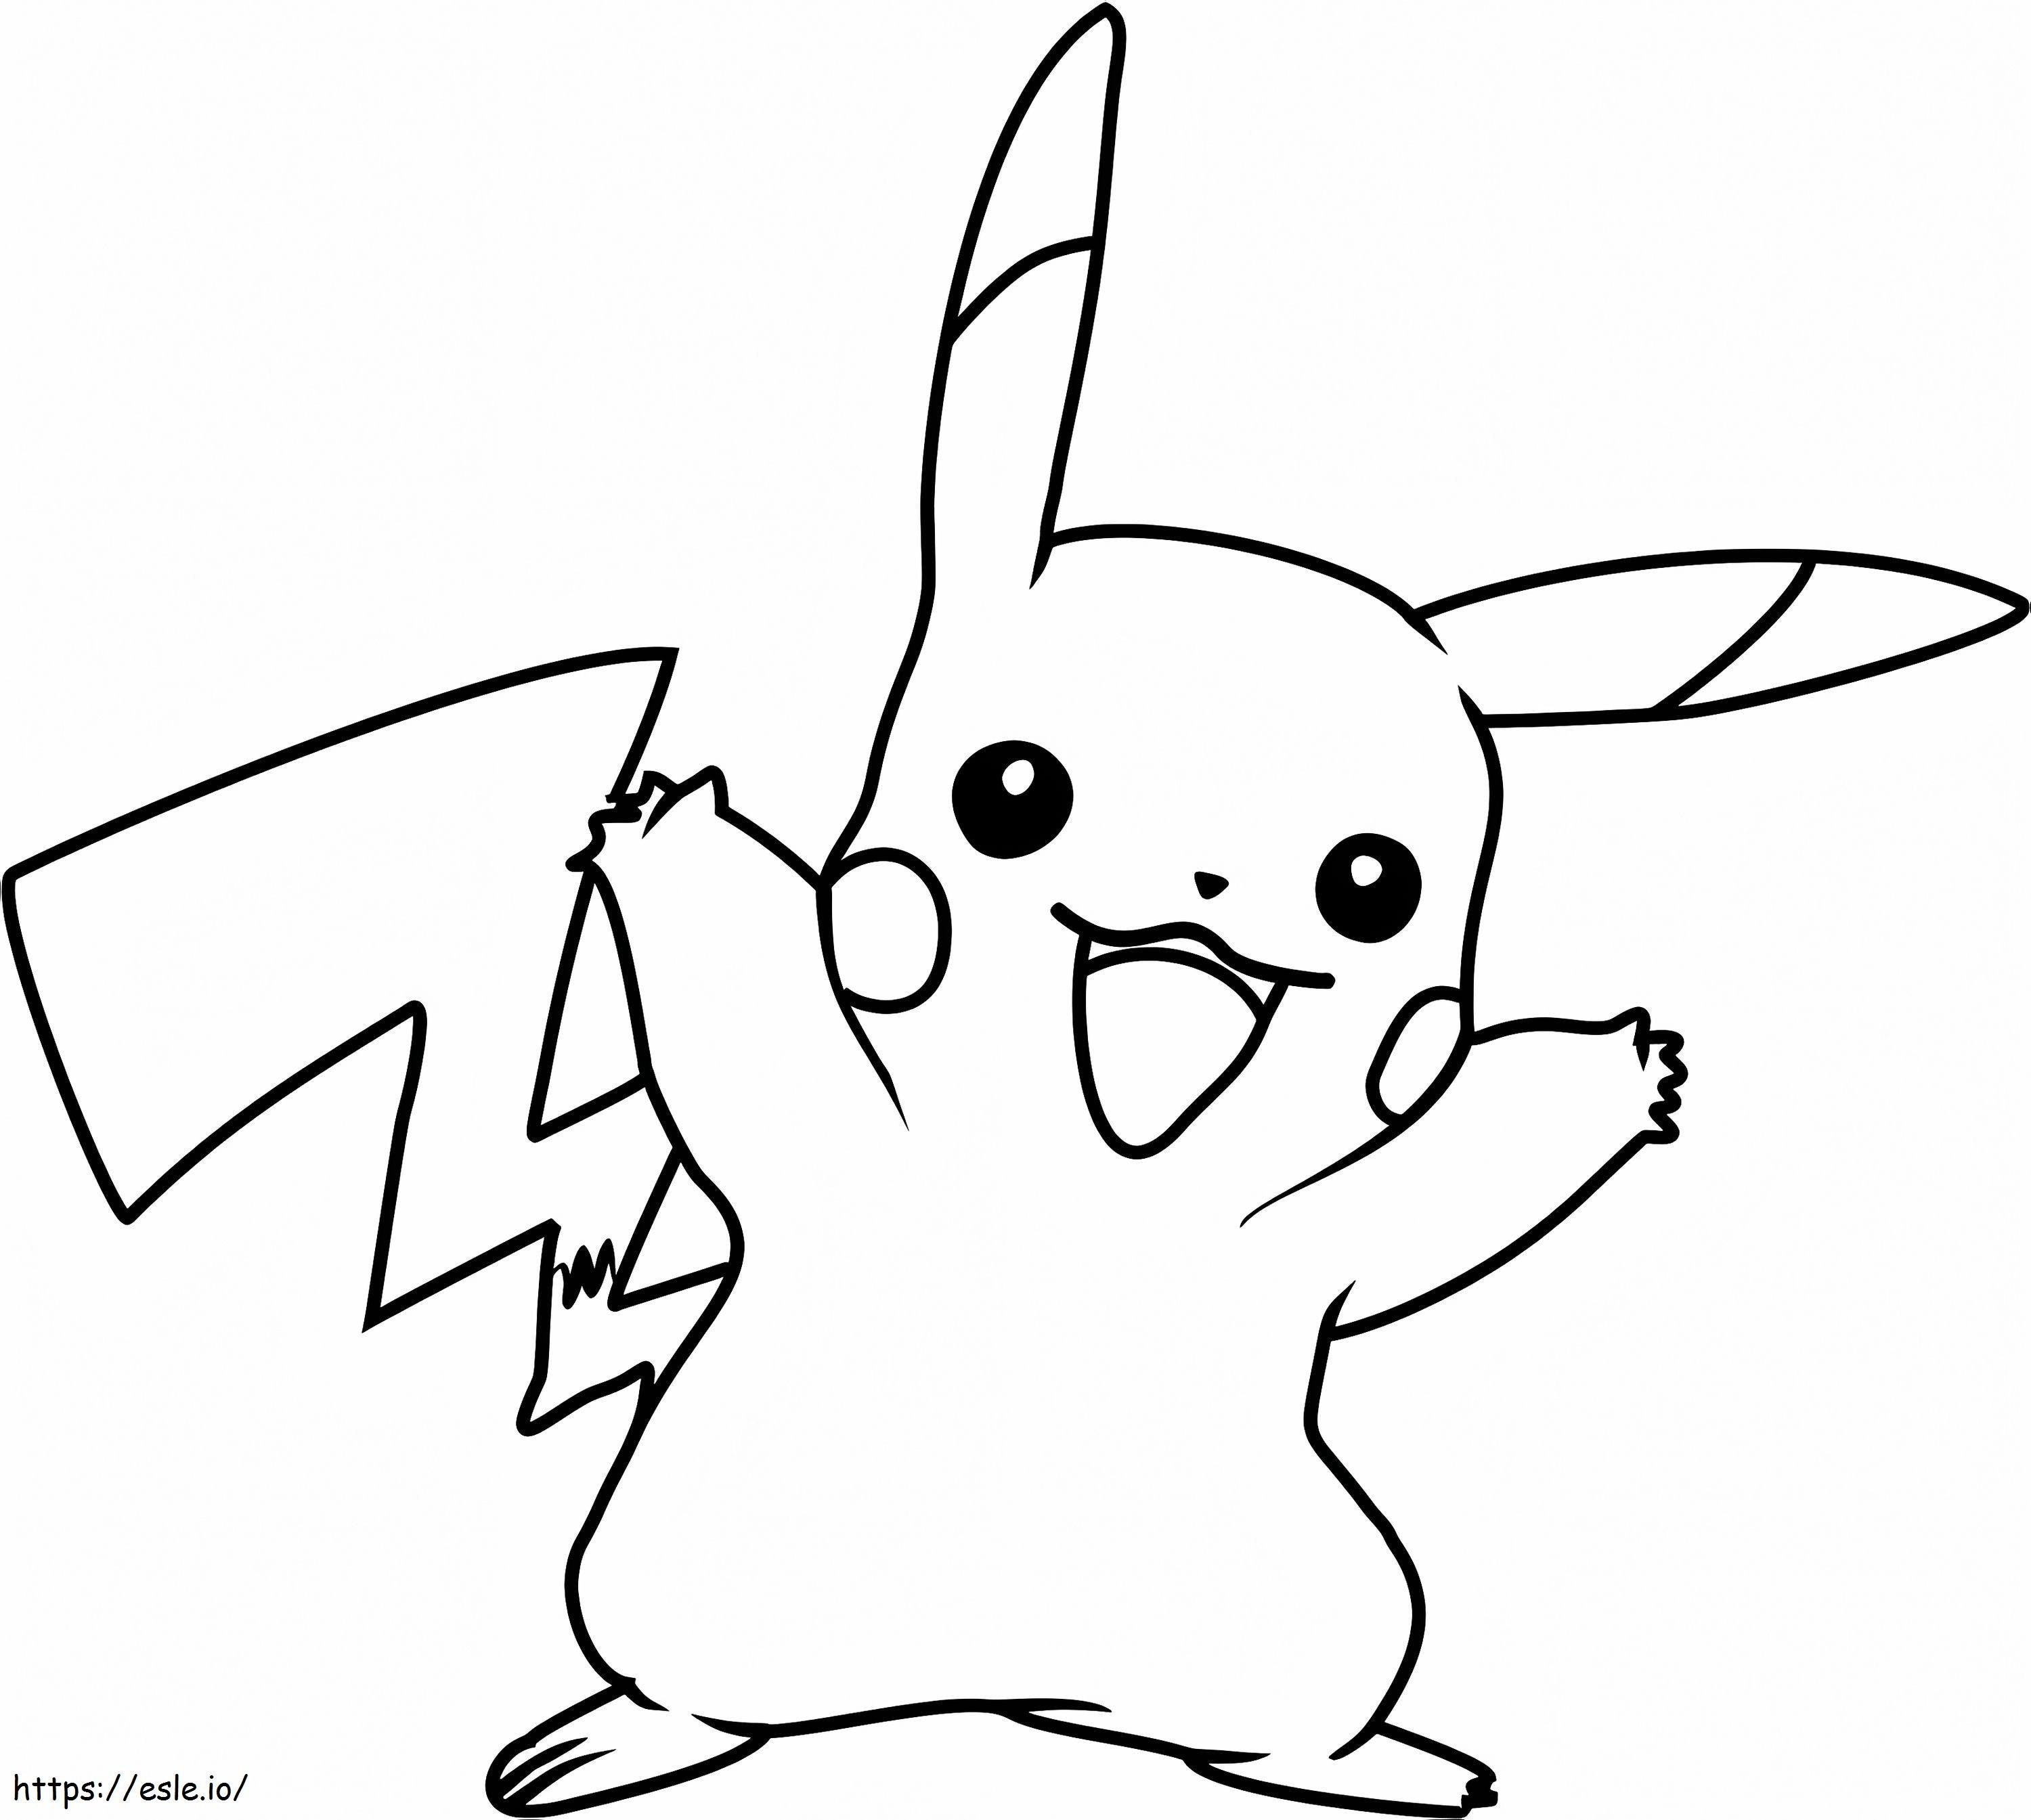 1530669716 Pikachu Pokemon A4 kifestő